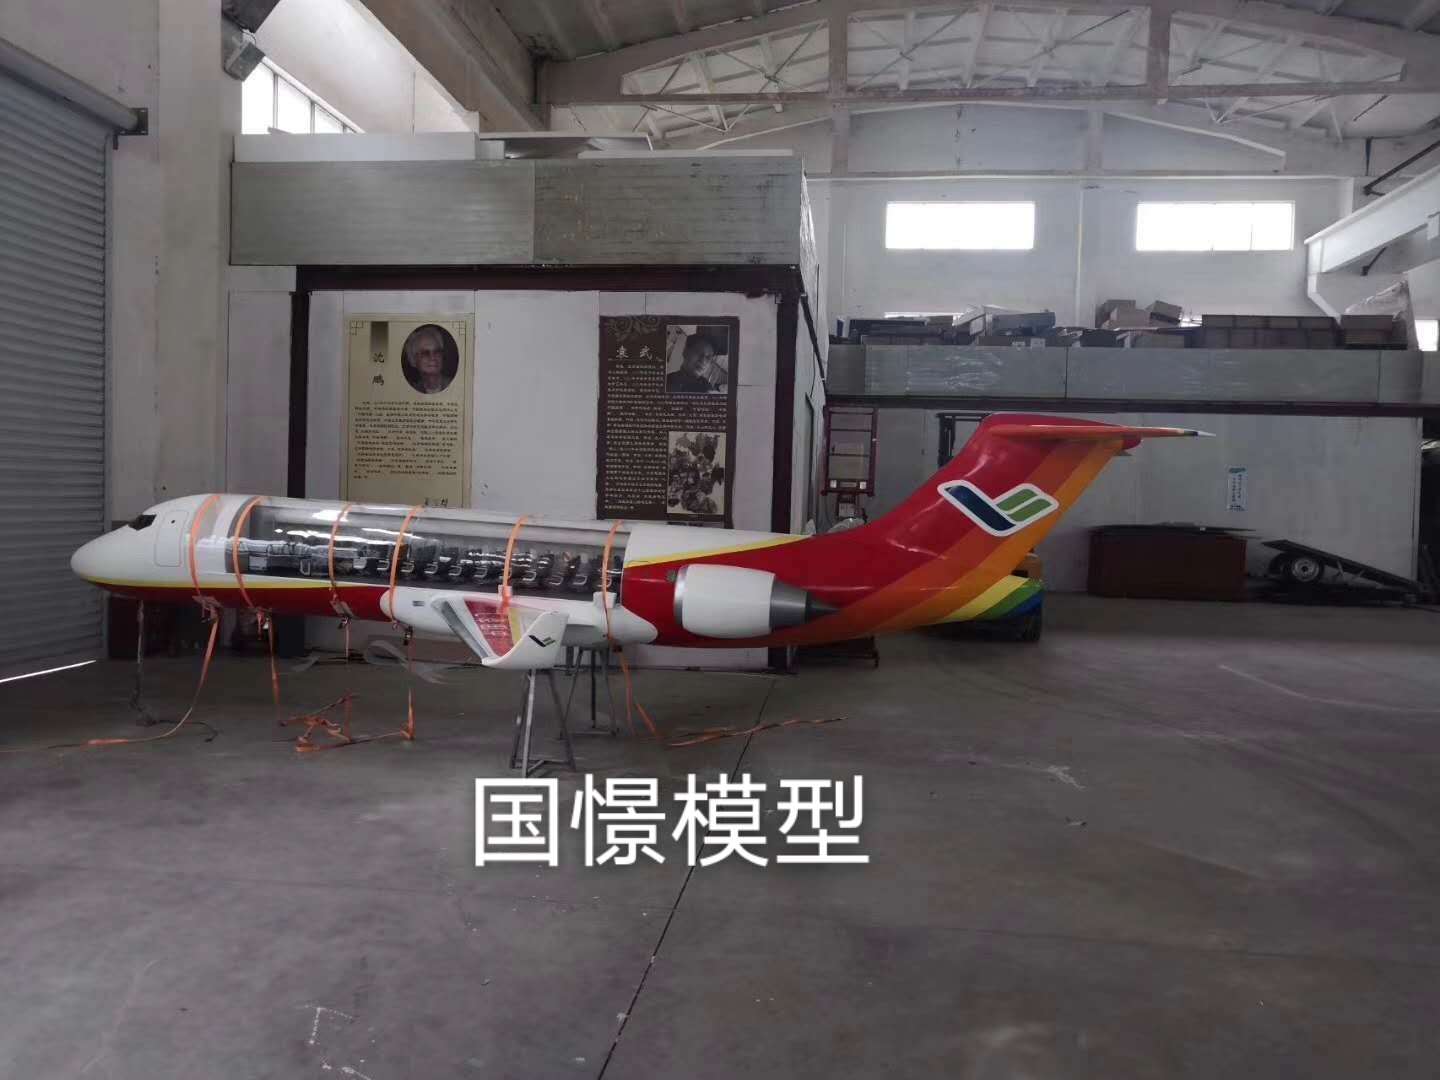 将乐县飞机模型